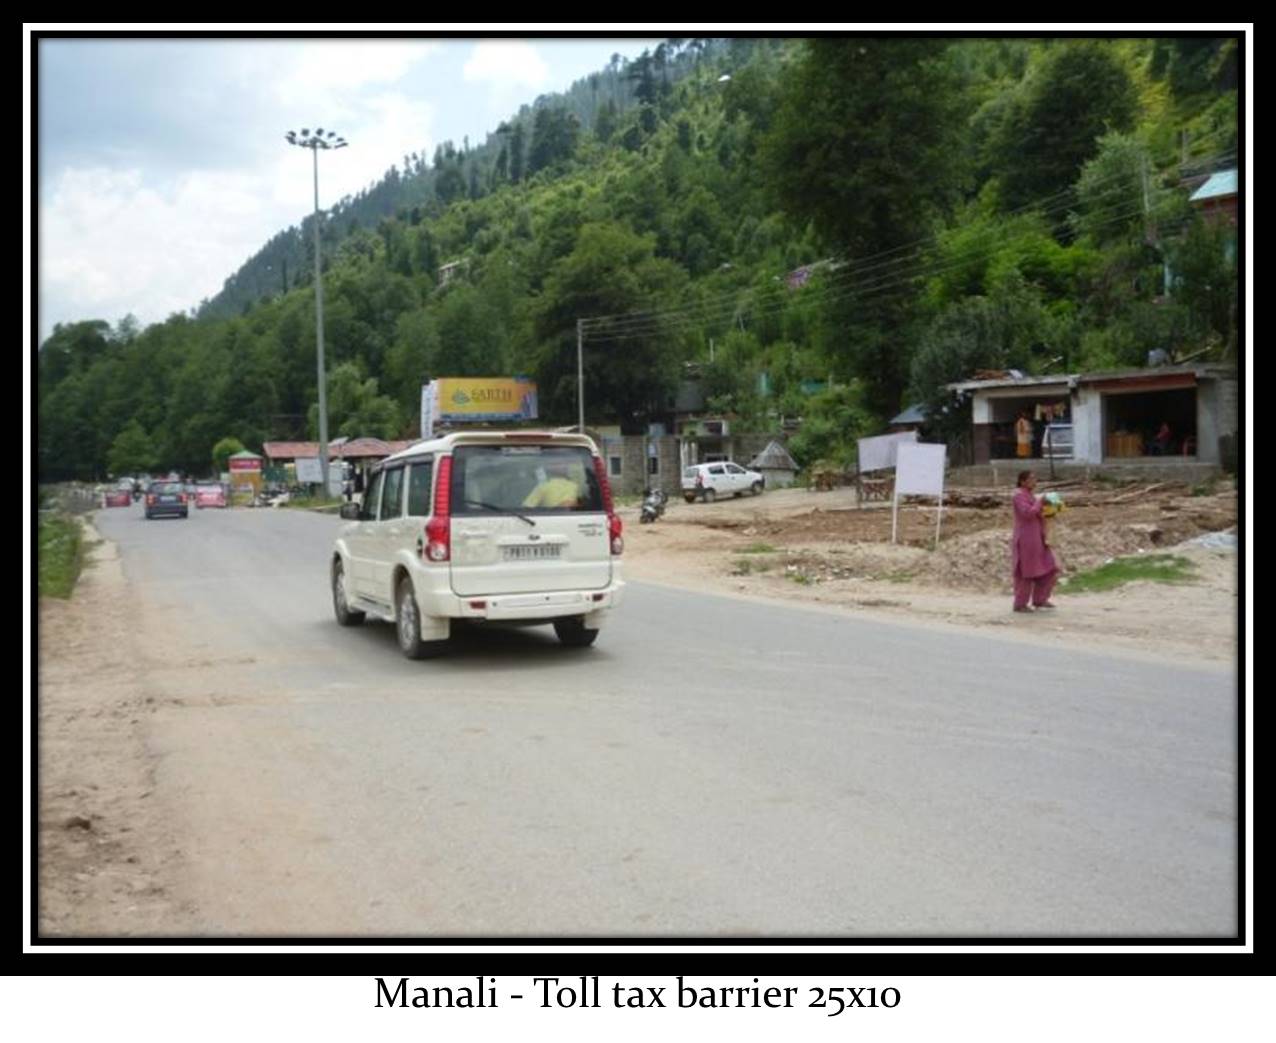 Toll tax barrier, Manali